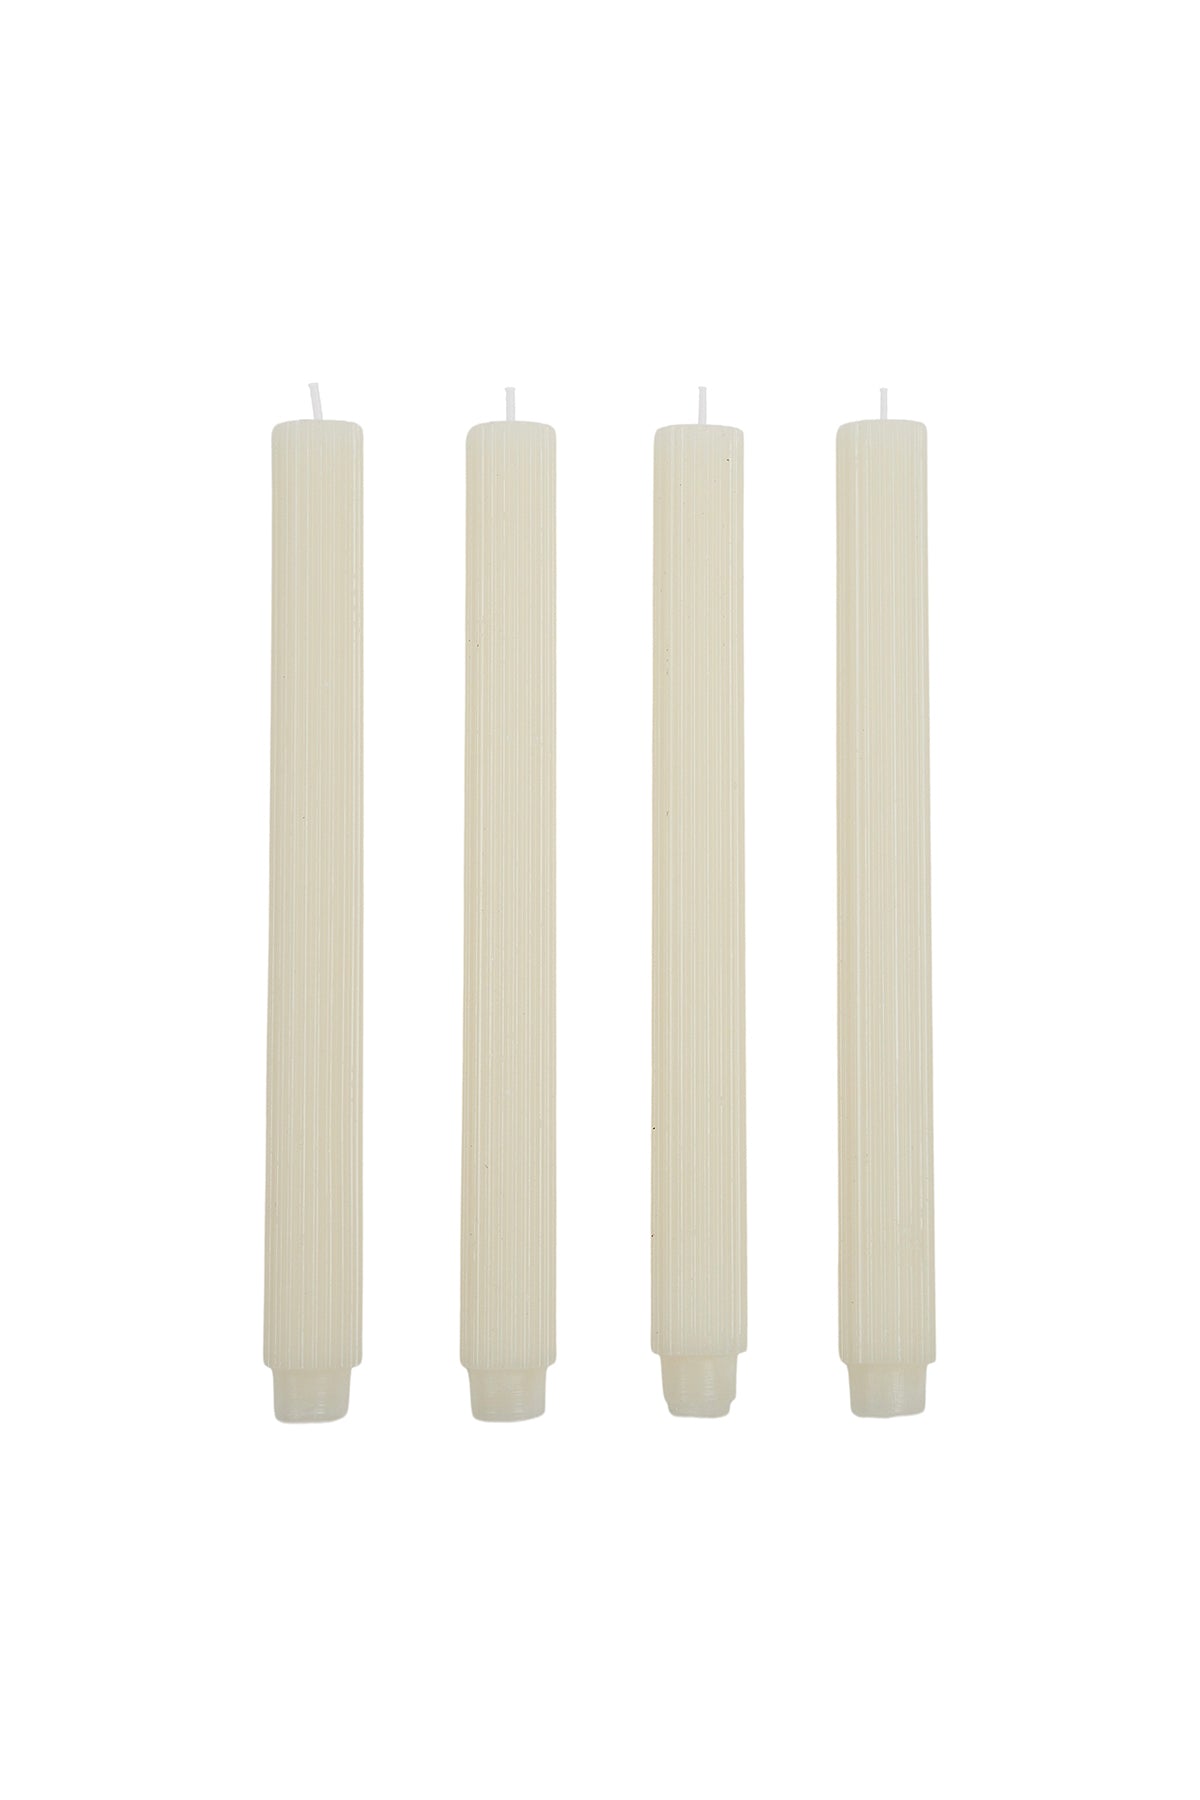 Ribbed Candle Set Ivory